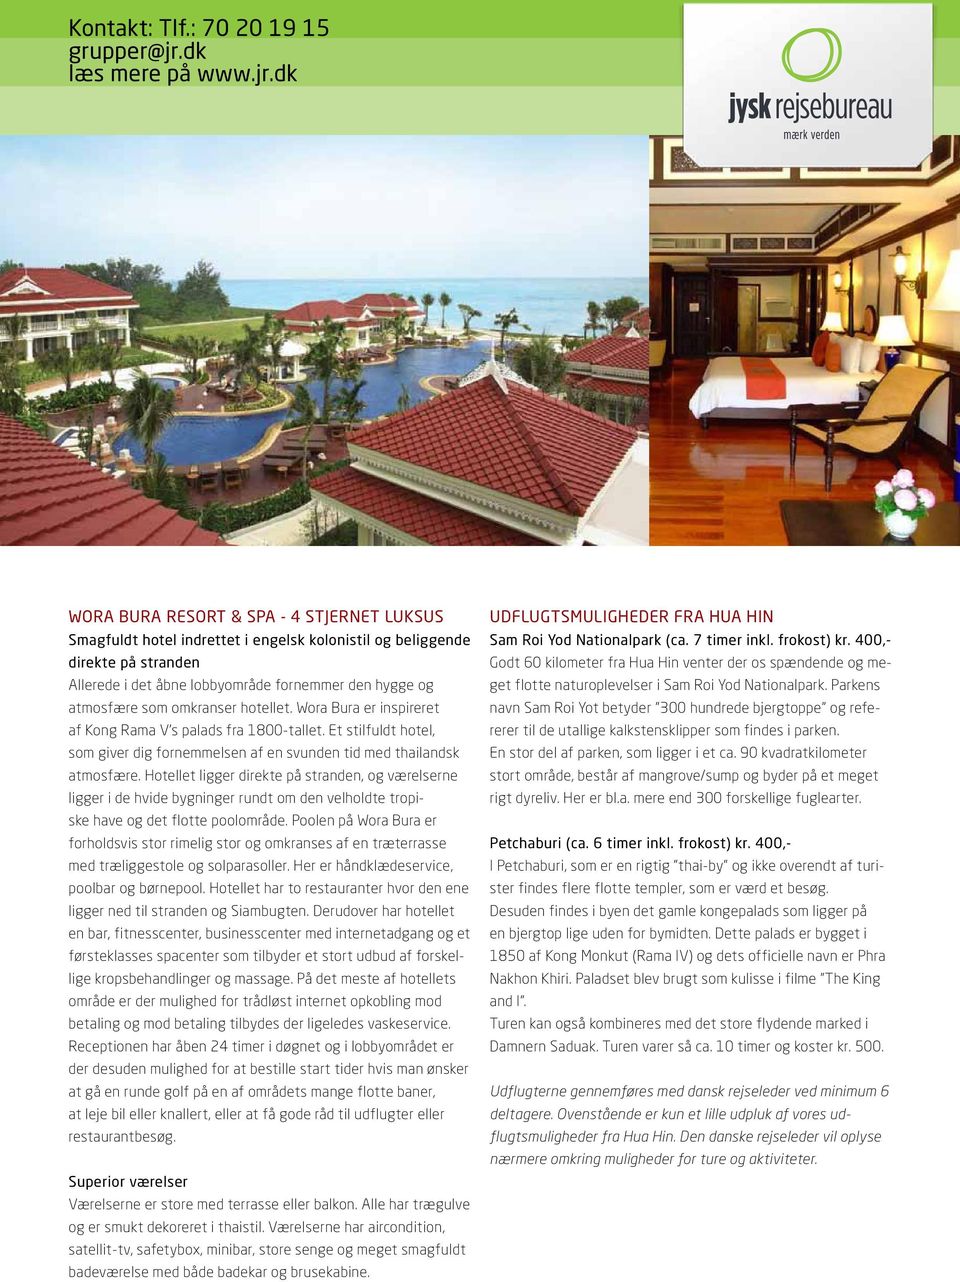 Hotellet ligger direkte på stranden, og værelserne ligger i de hvide bygninger rundt om den velholdte tropiske have og det flotte poolområde.